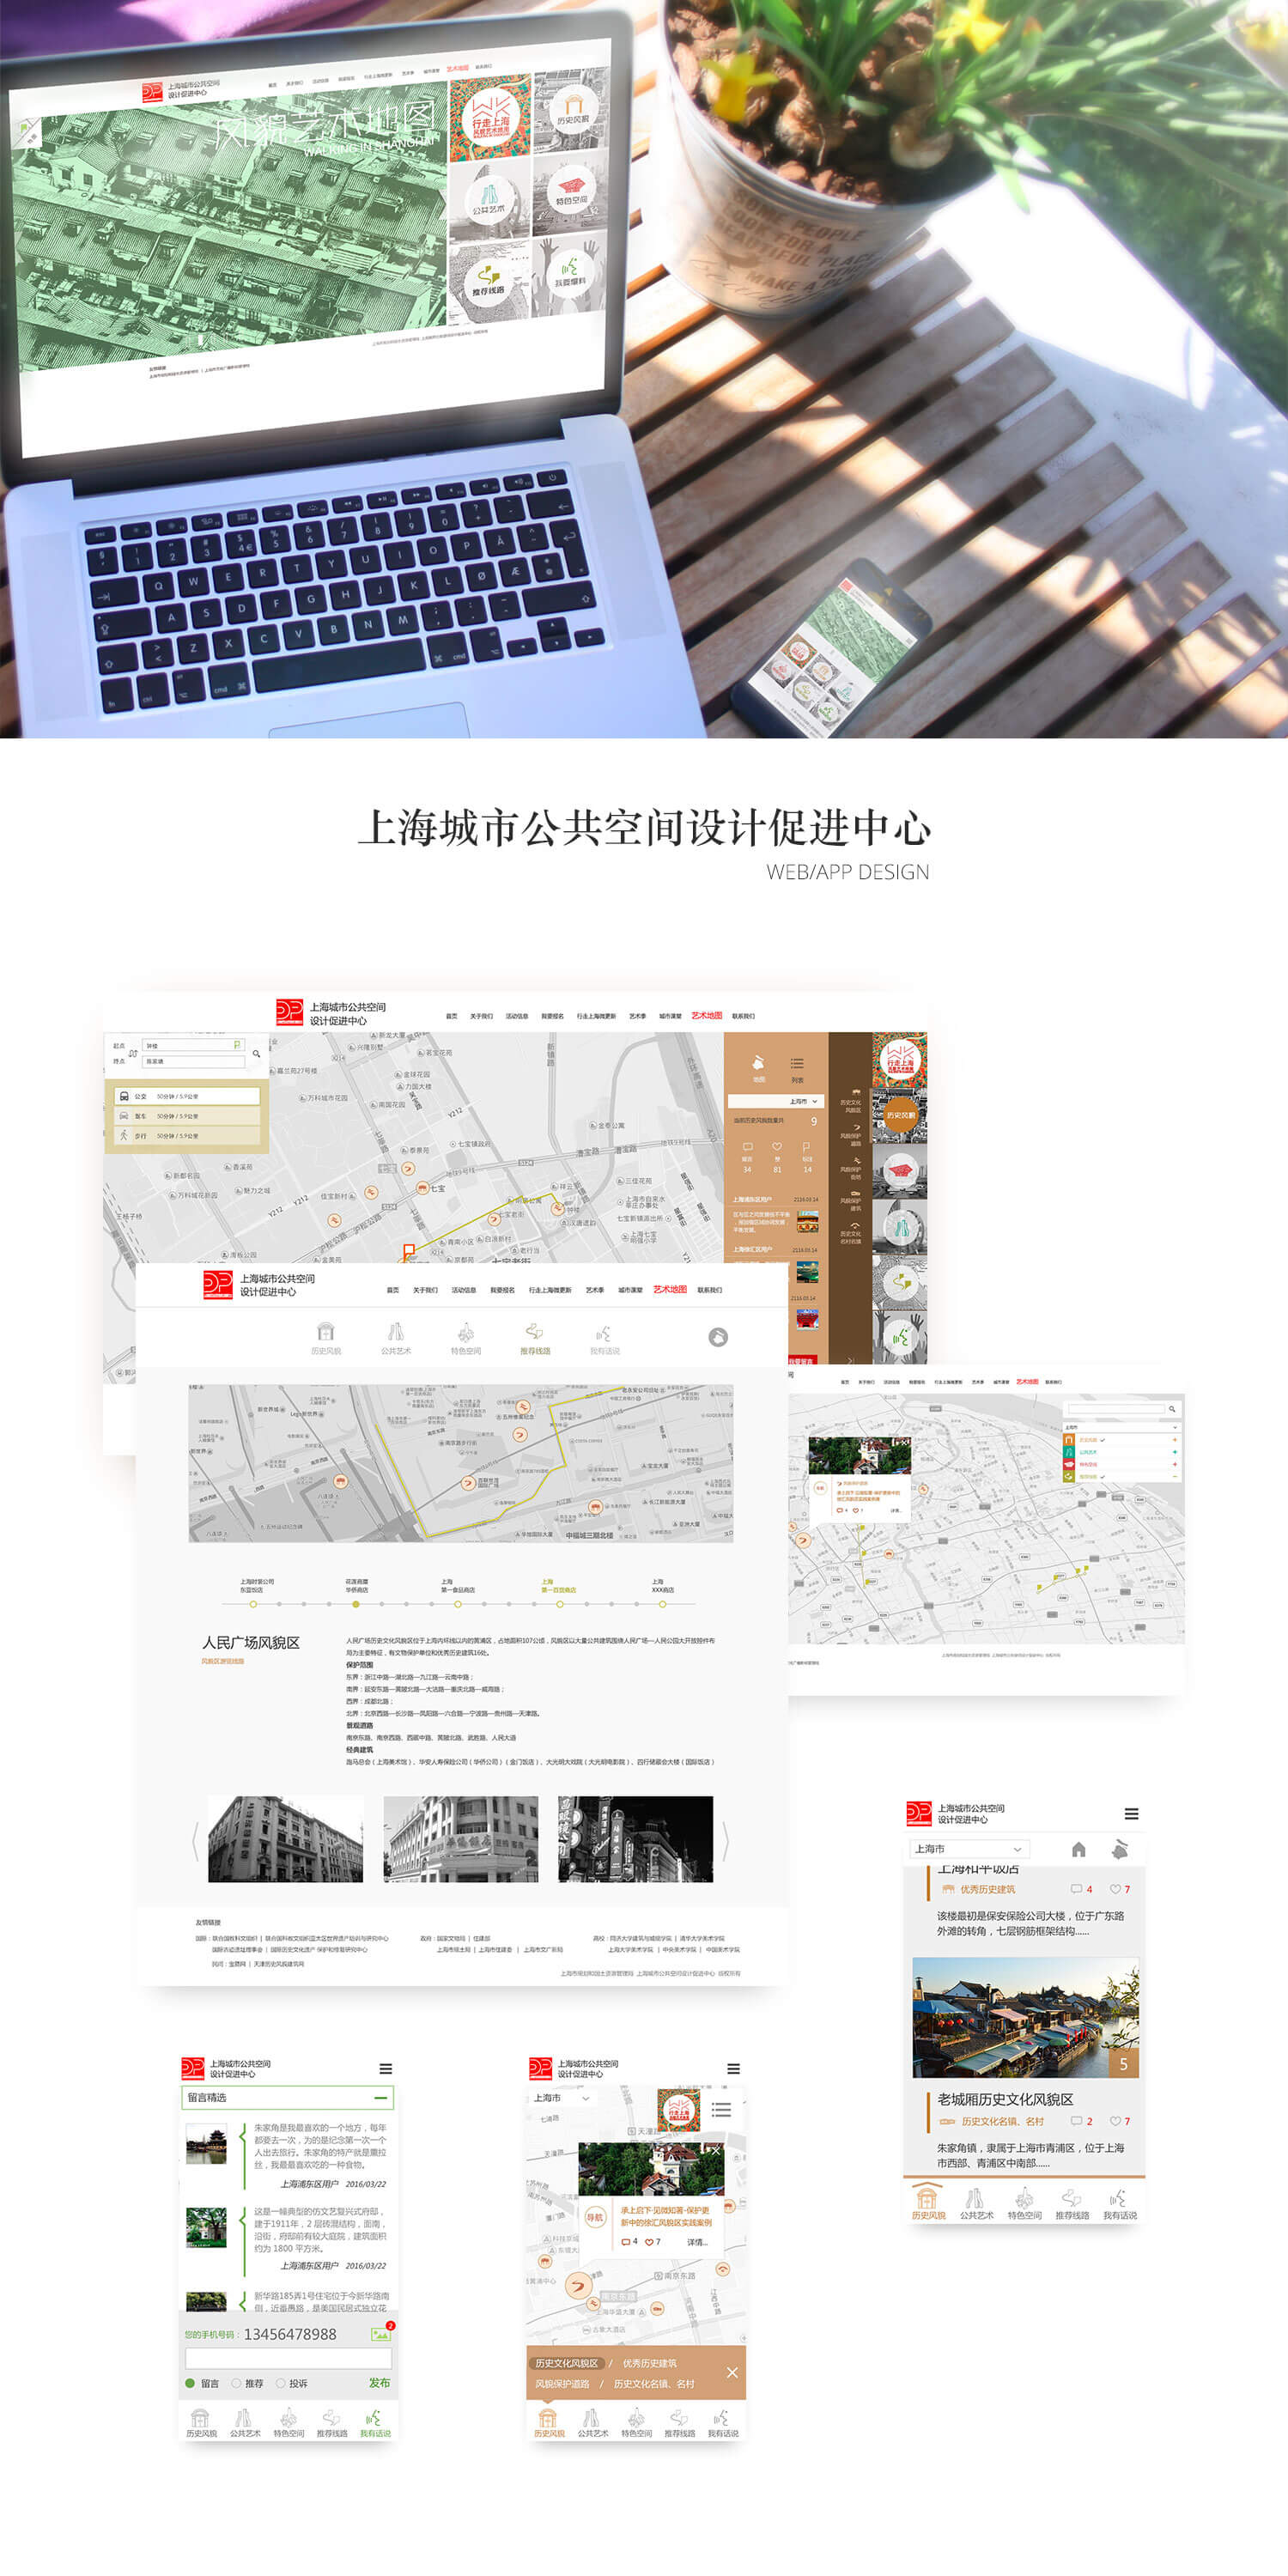 另美创意 | 上海城市公共空间设计促进中心网站界面，风貌艺术地图网站界面